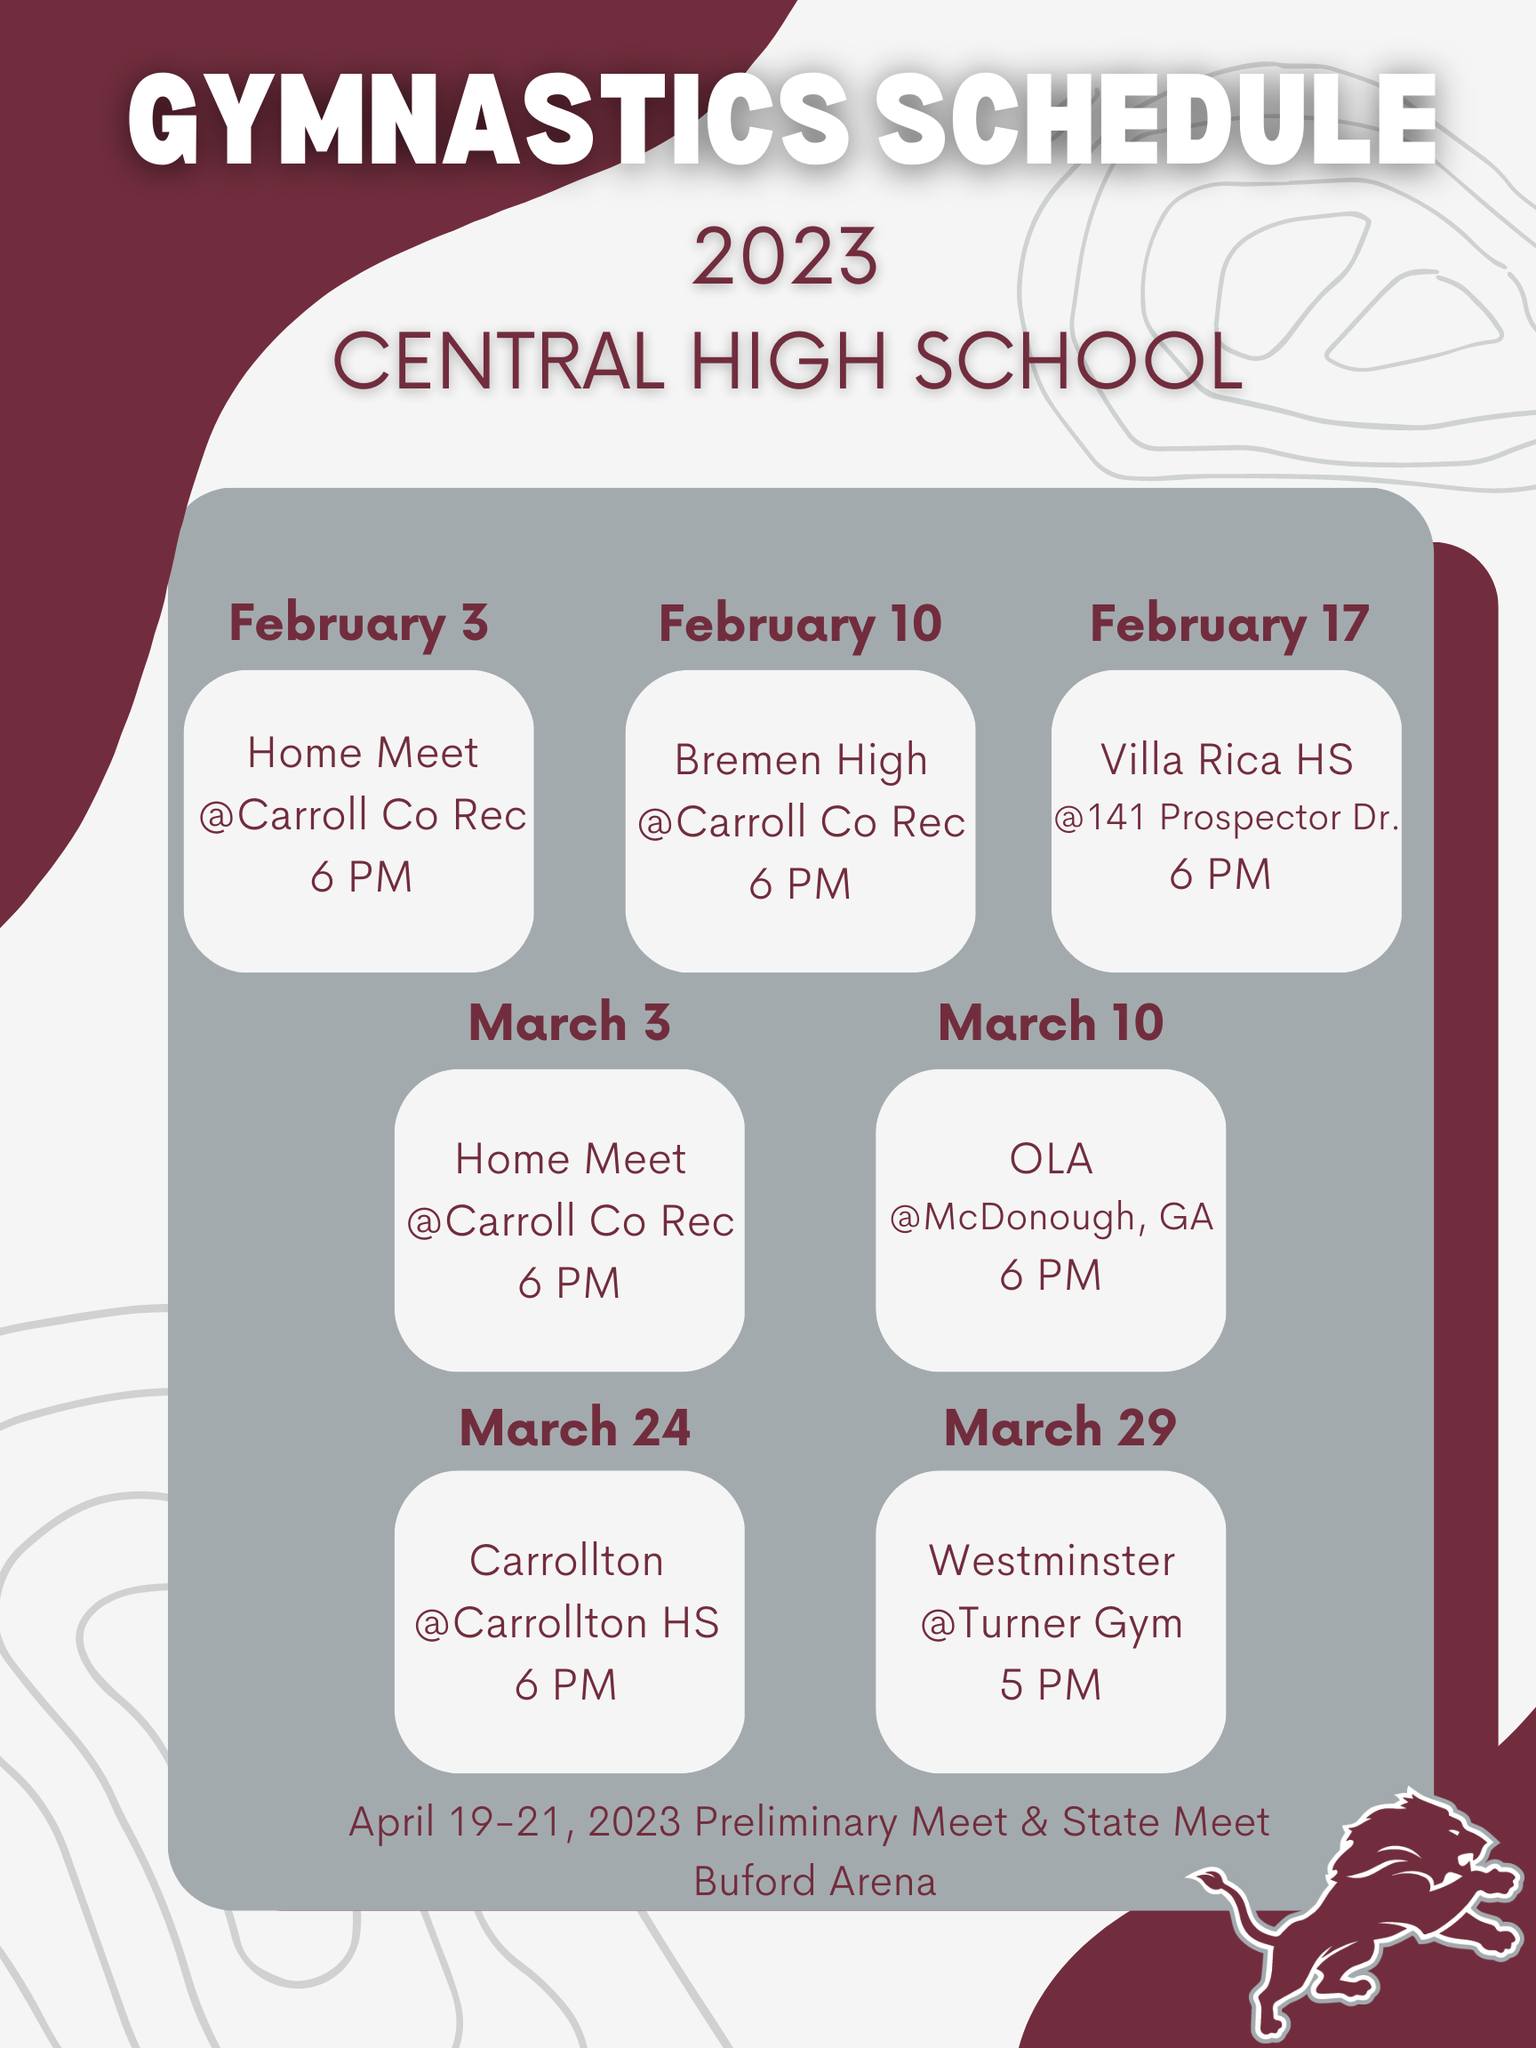 Central High School Gymnastics Schedule